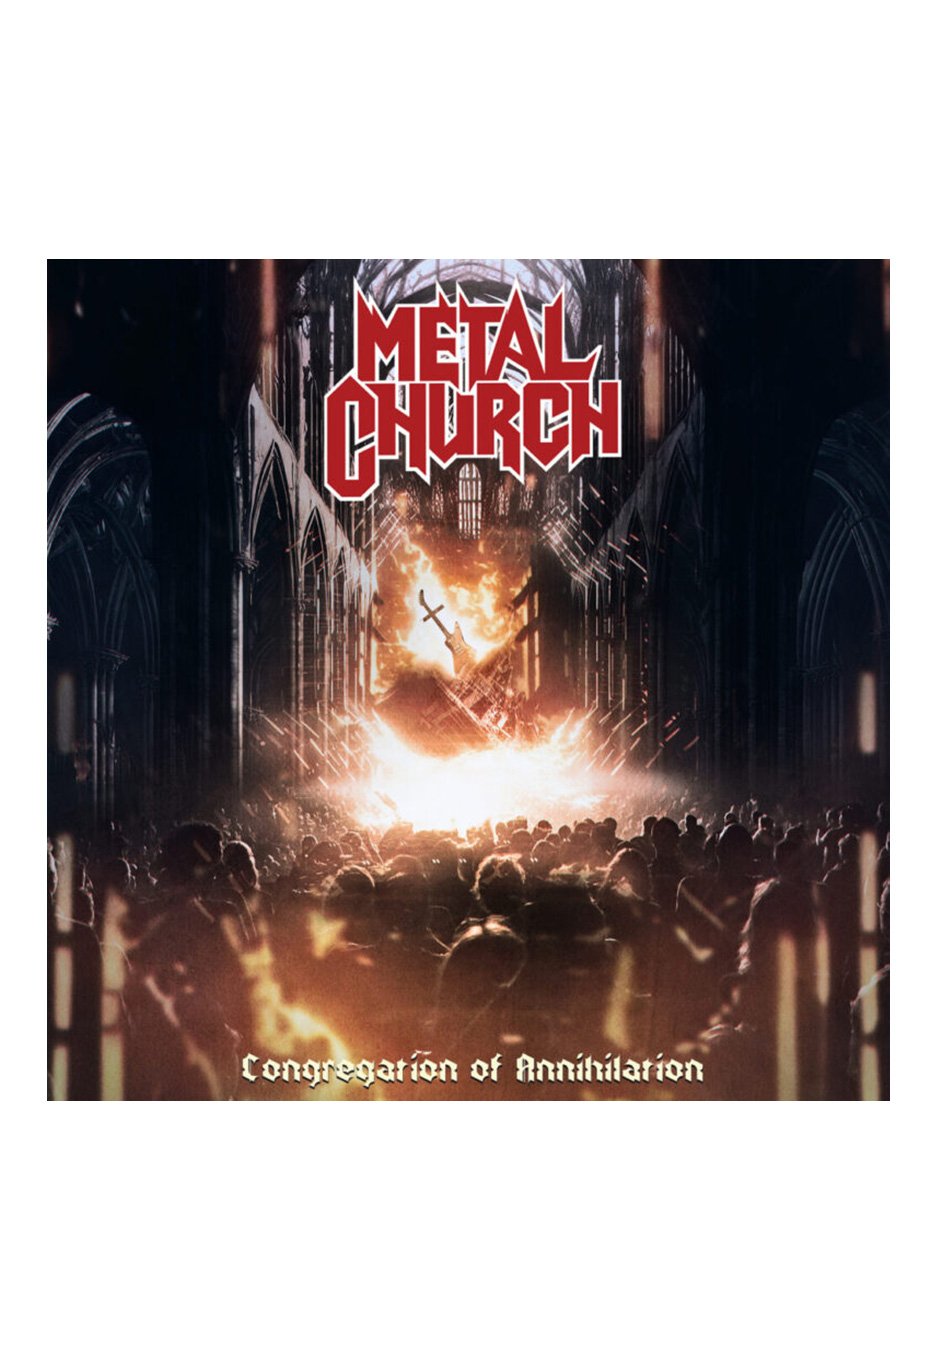 Metal Church - Congregation Of Annihilation Ltd. White/Orange/Red/Black - Marbled Vinyl